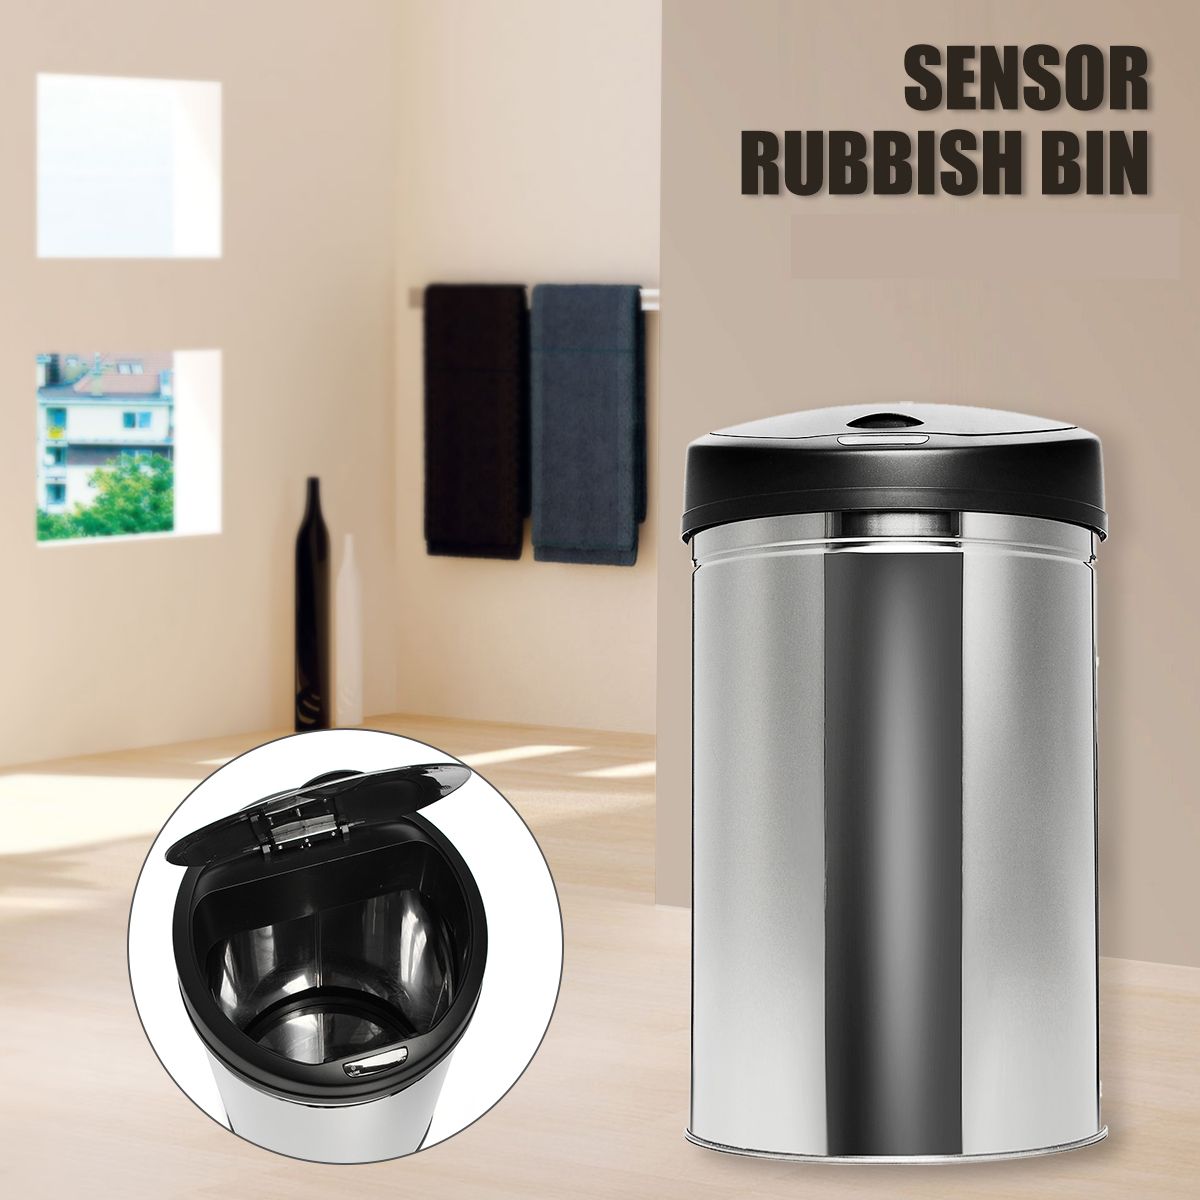 Round-Sensor-Rubbish-Bin-Stainless-Trash-Bin-Waste-Bins-30L40L50L60L-1632697